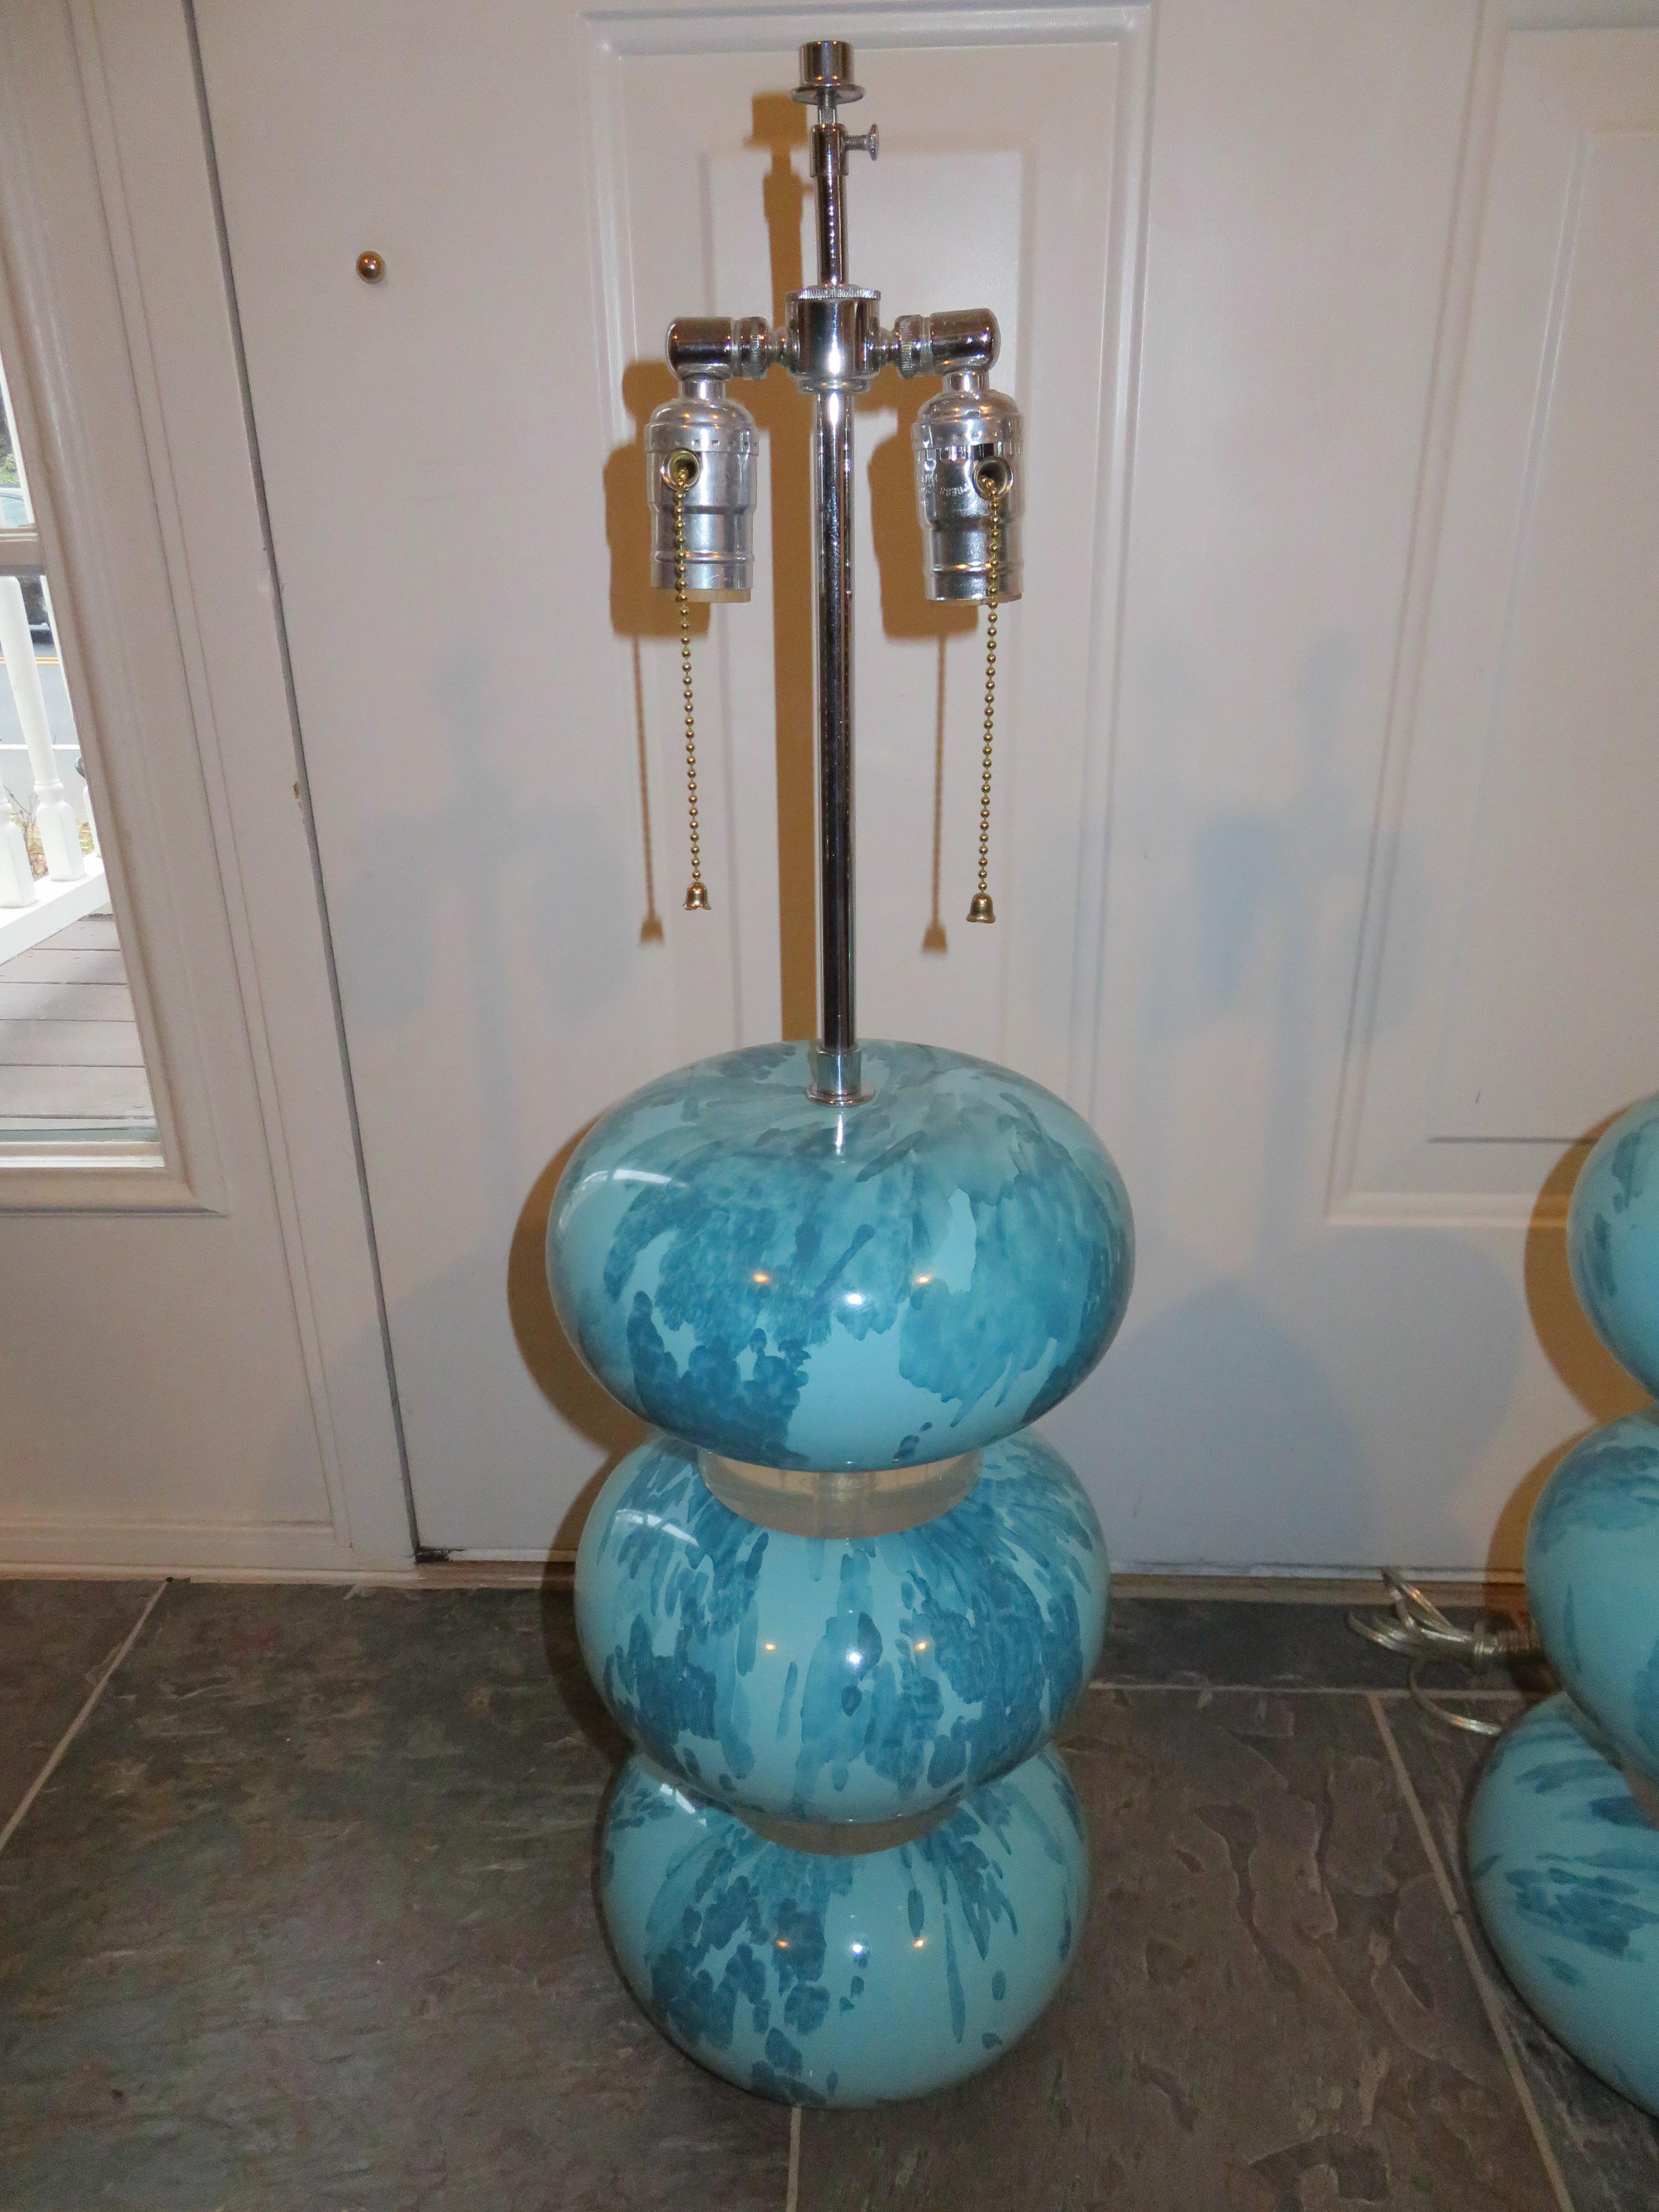 Magnifique et rare paire de lampes de table Karl Springer en laque bleue marbrée et bulles en Lucite, USA, 1970. Conserve la finition laquée bleue marbrée d'origine de Springer sur trois sphères arrondies compressées en plâtre séparées par deux